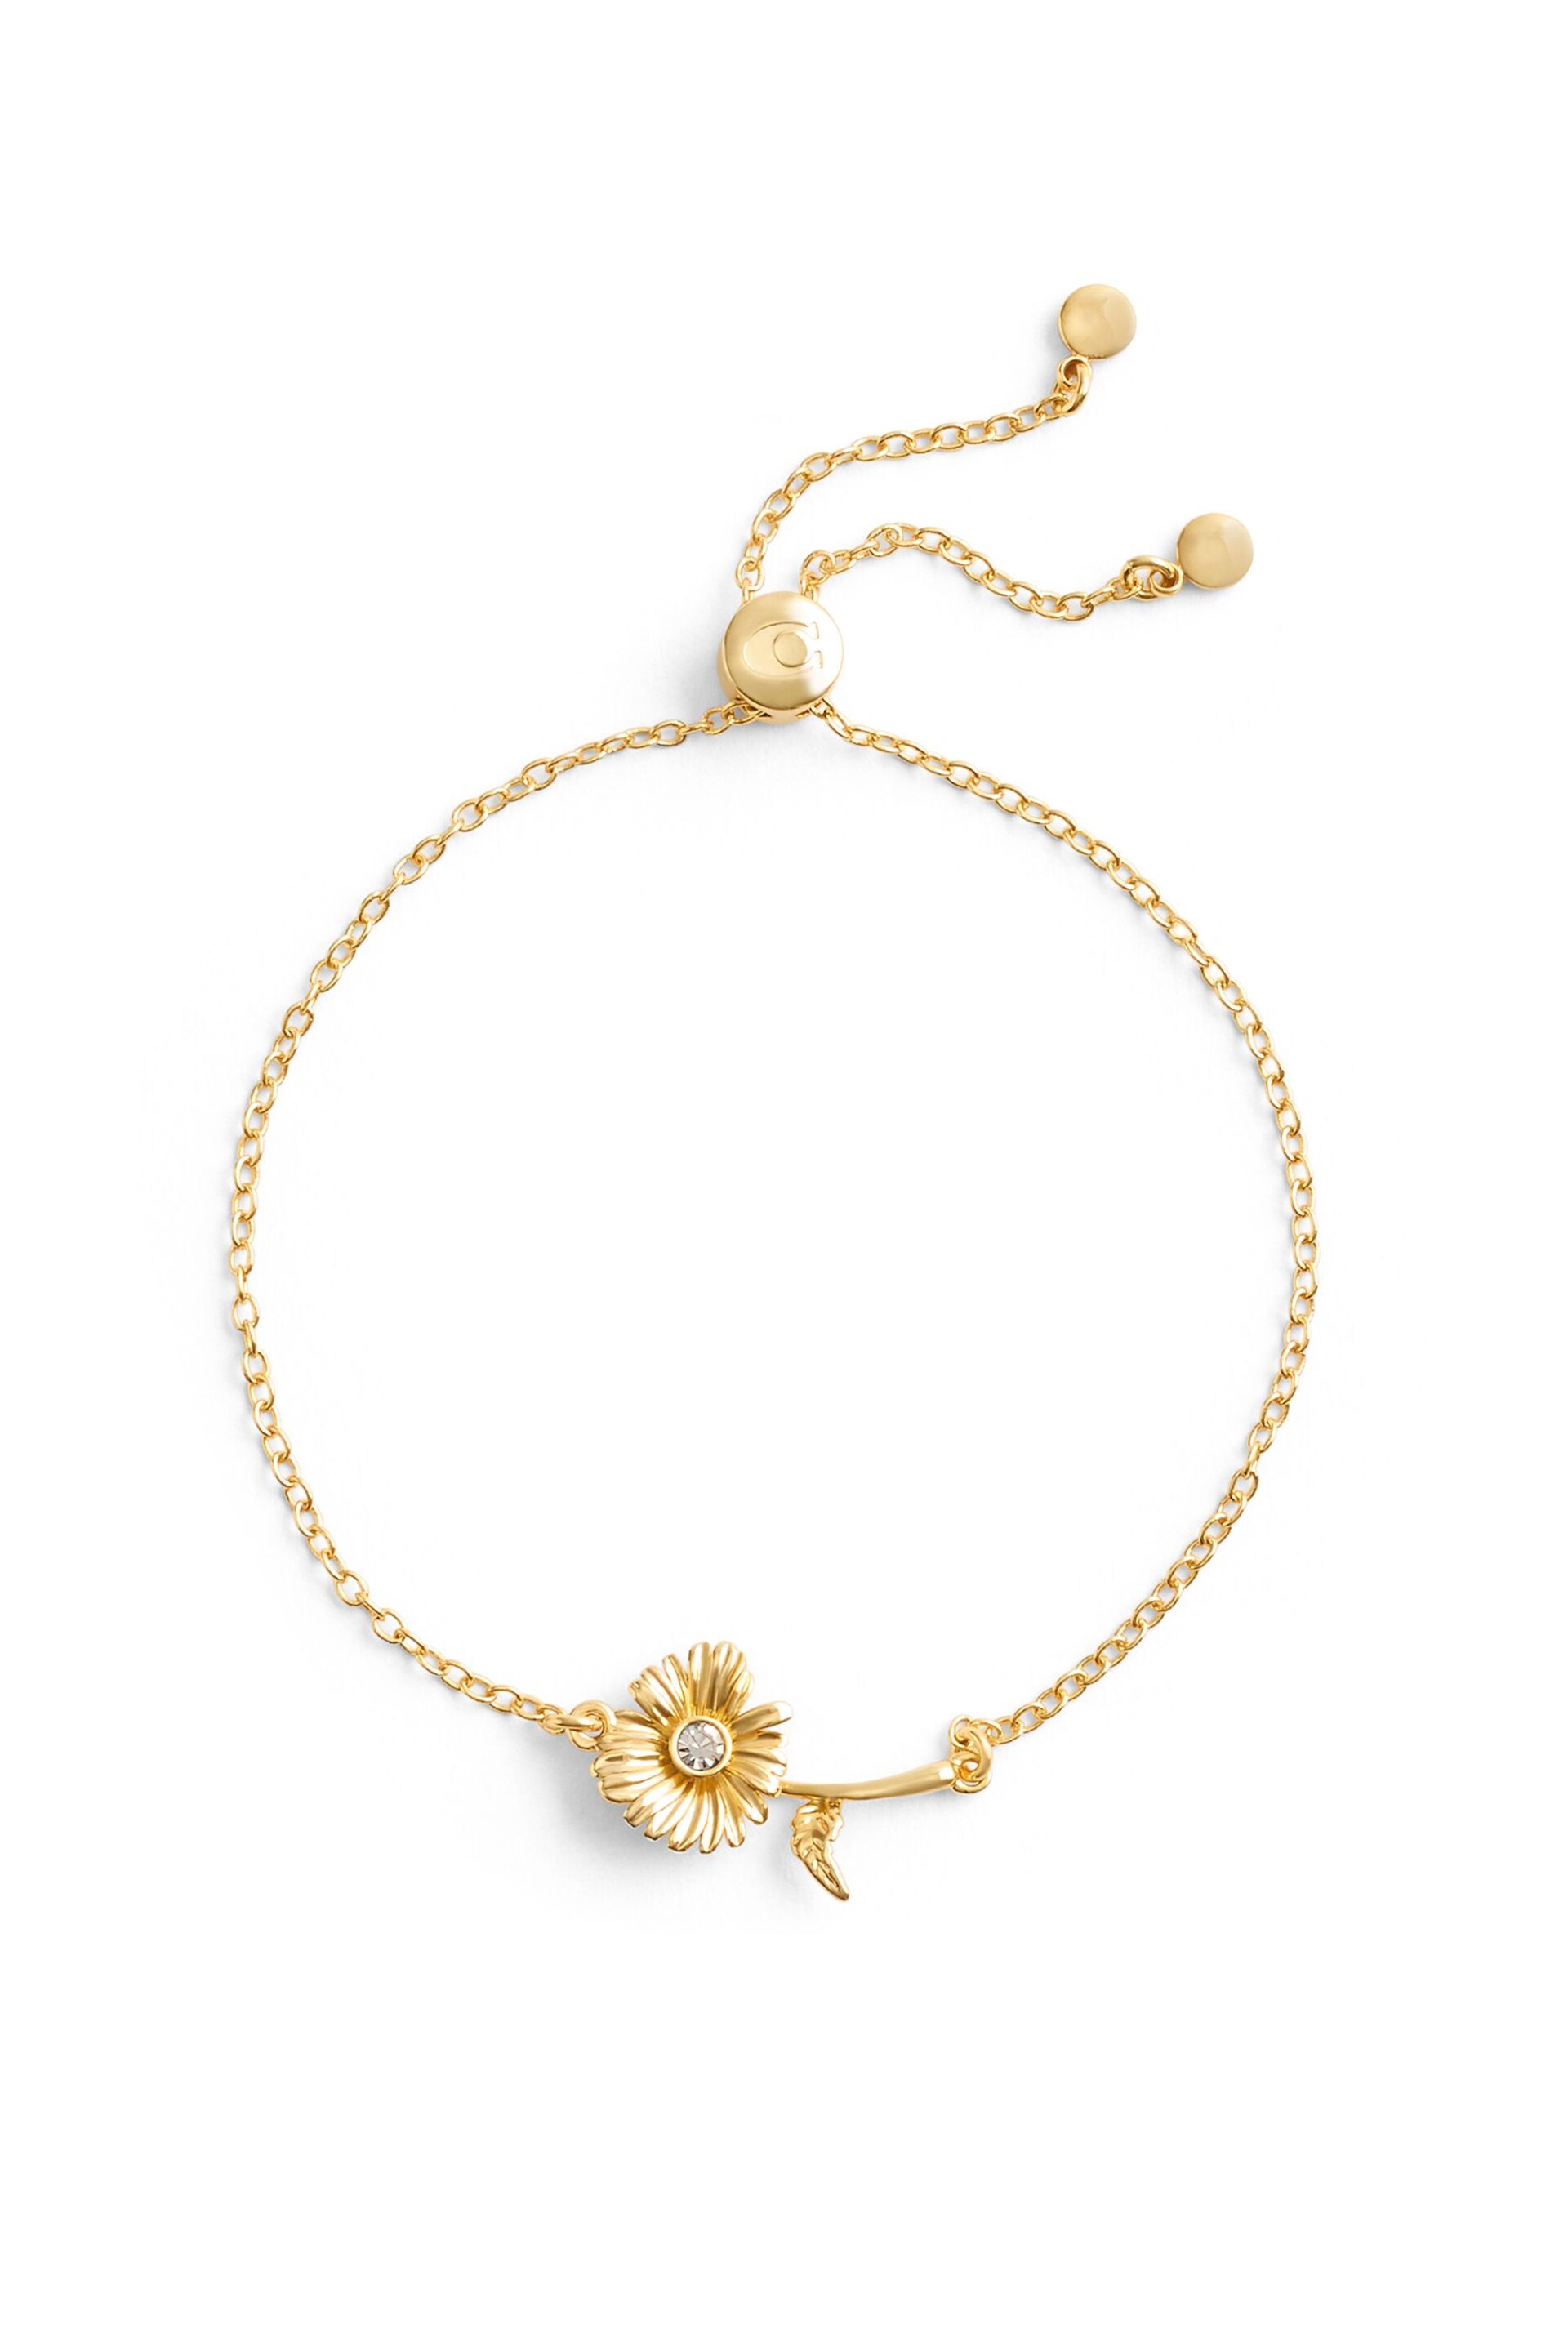 COACH Gold Tone Daisy Slider Bracelet - Image 2 of 3